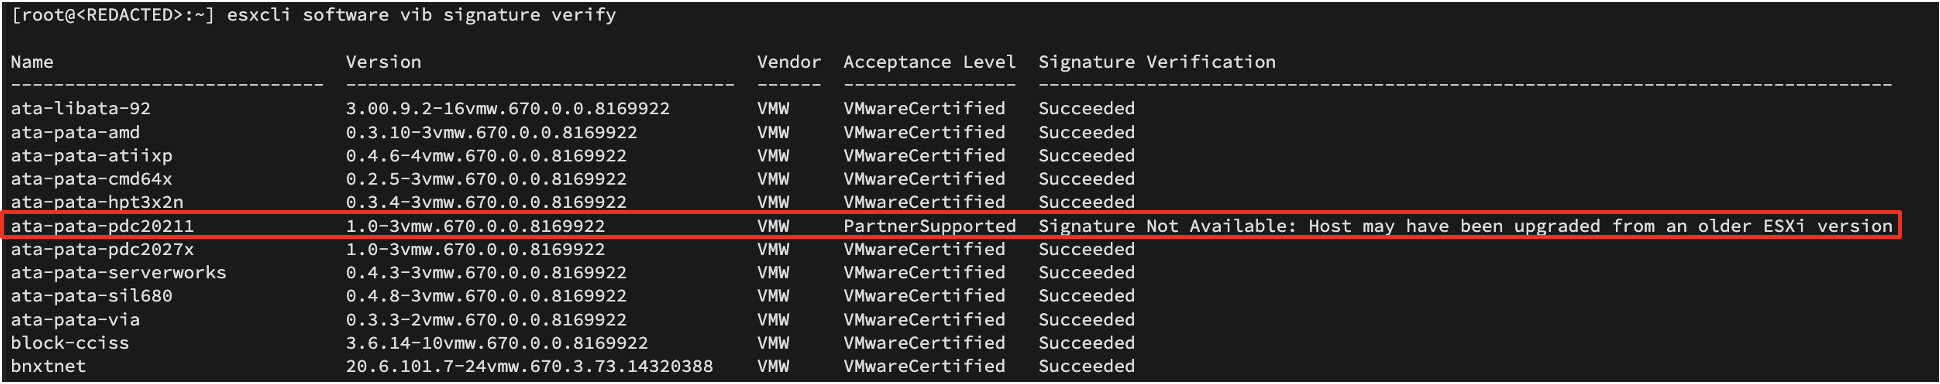 esxcli ソフトウェア vib 署名検証で偽造された VIB 許容レベルが見られる例